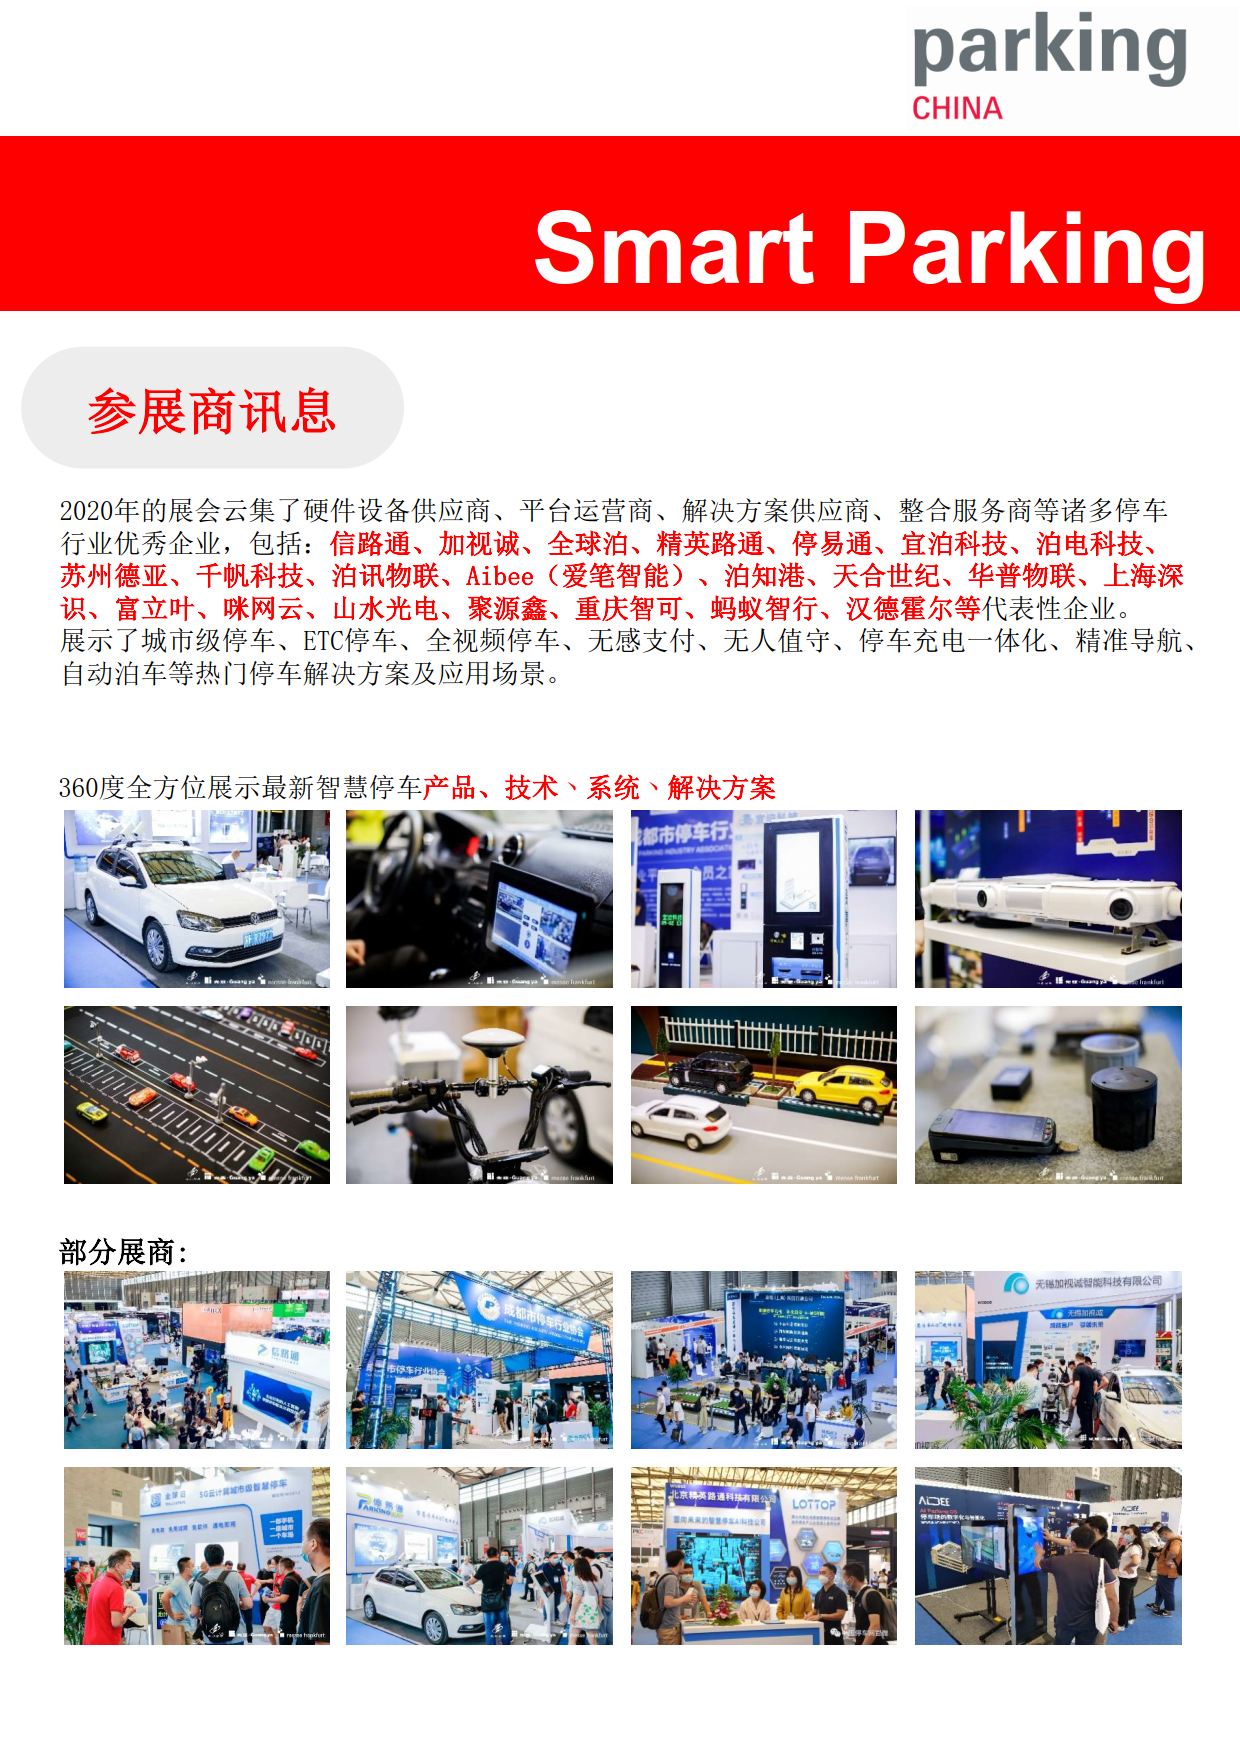 上海國際智慧停車展覽會 Parking China